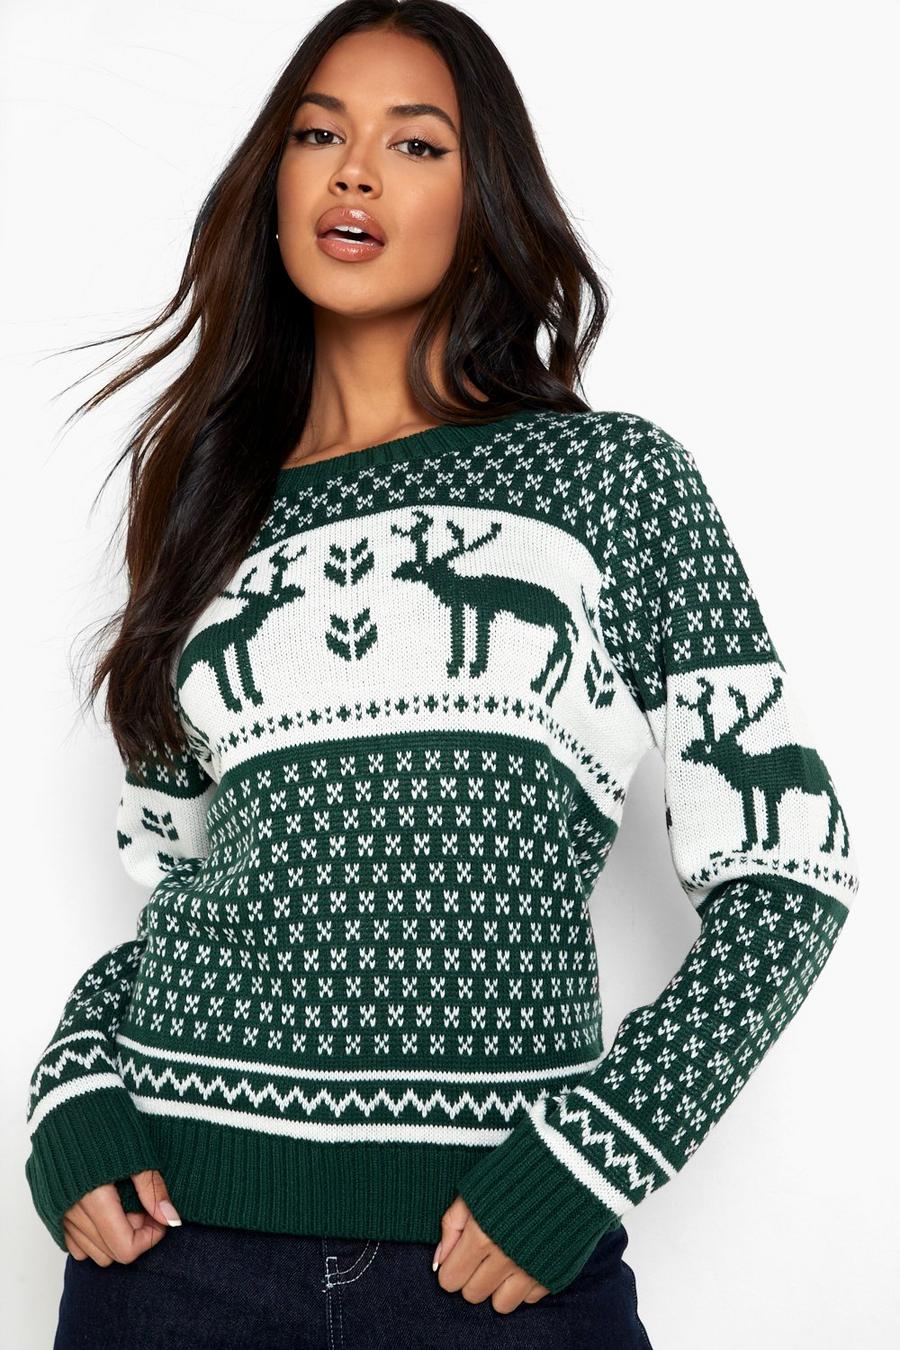 Maglione natalizio in maglia con fiocchi di neve e renne, Verde bottiglia gerde